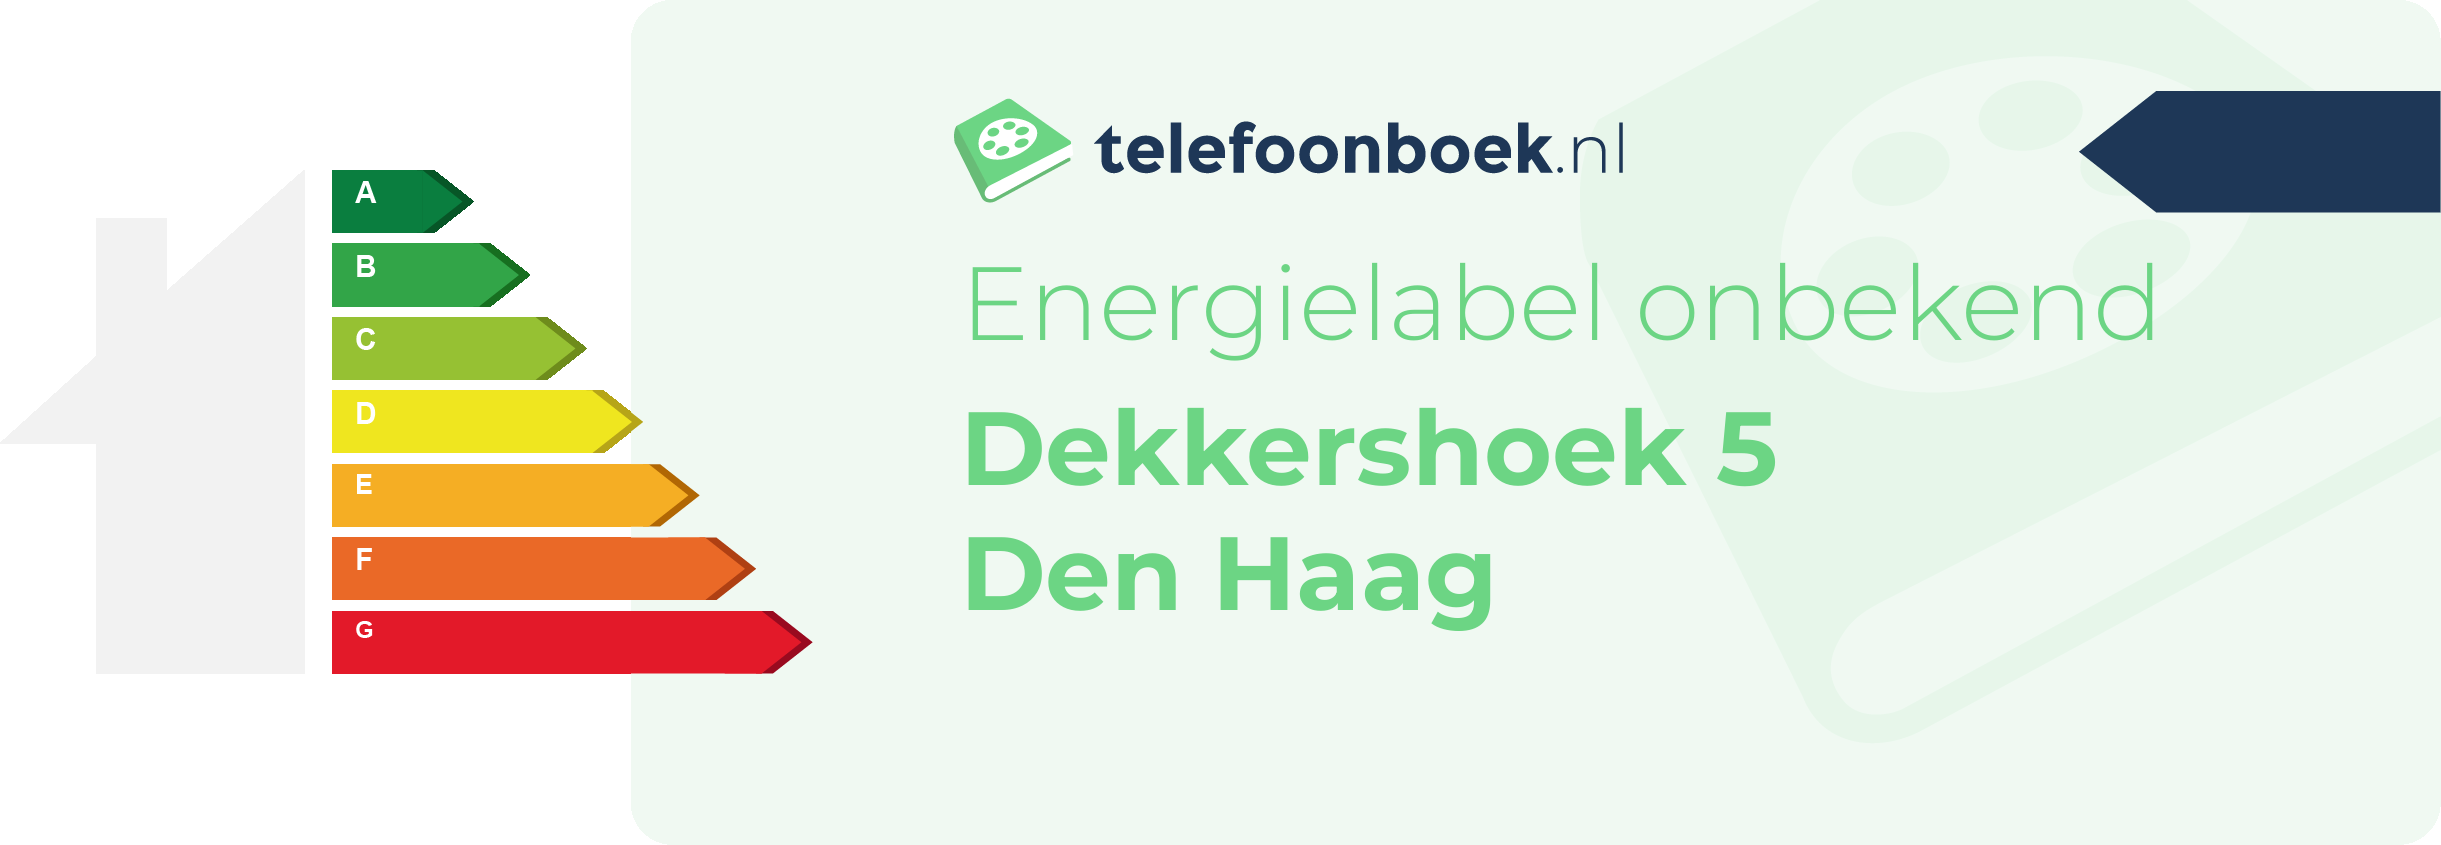 Energielabel Dekkershoek 5 Den Haag